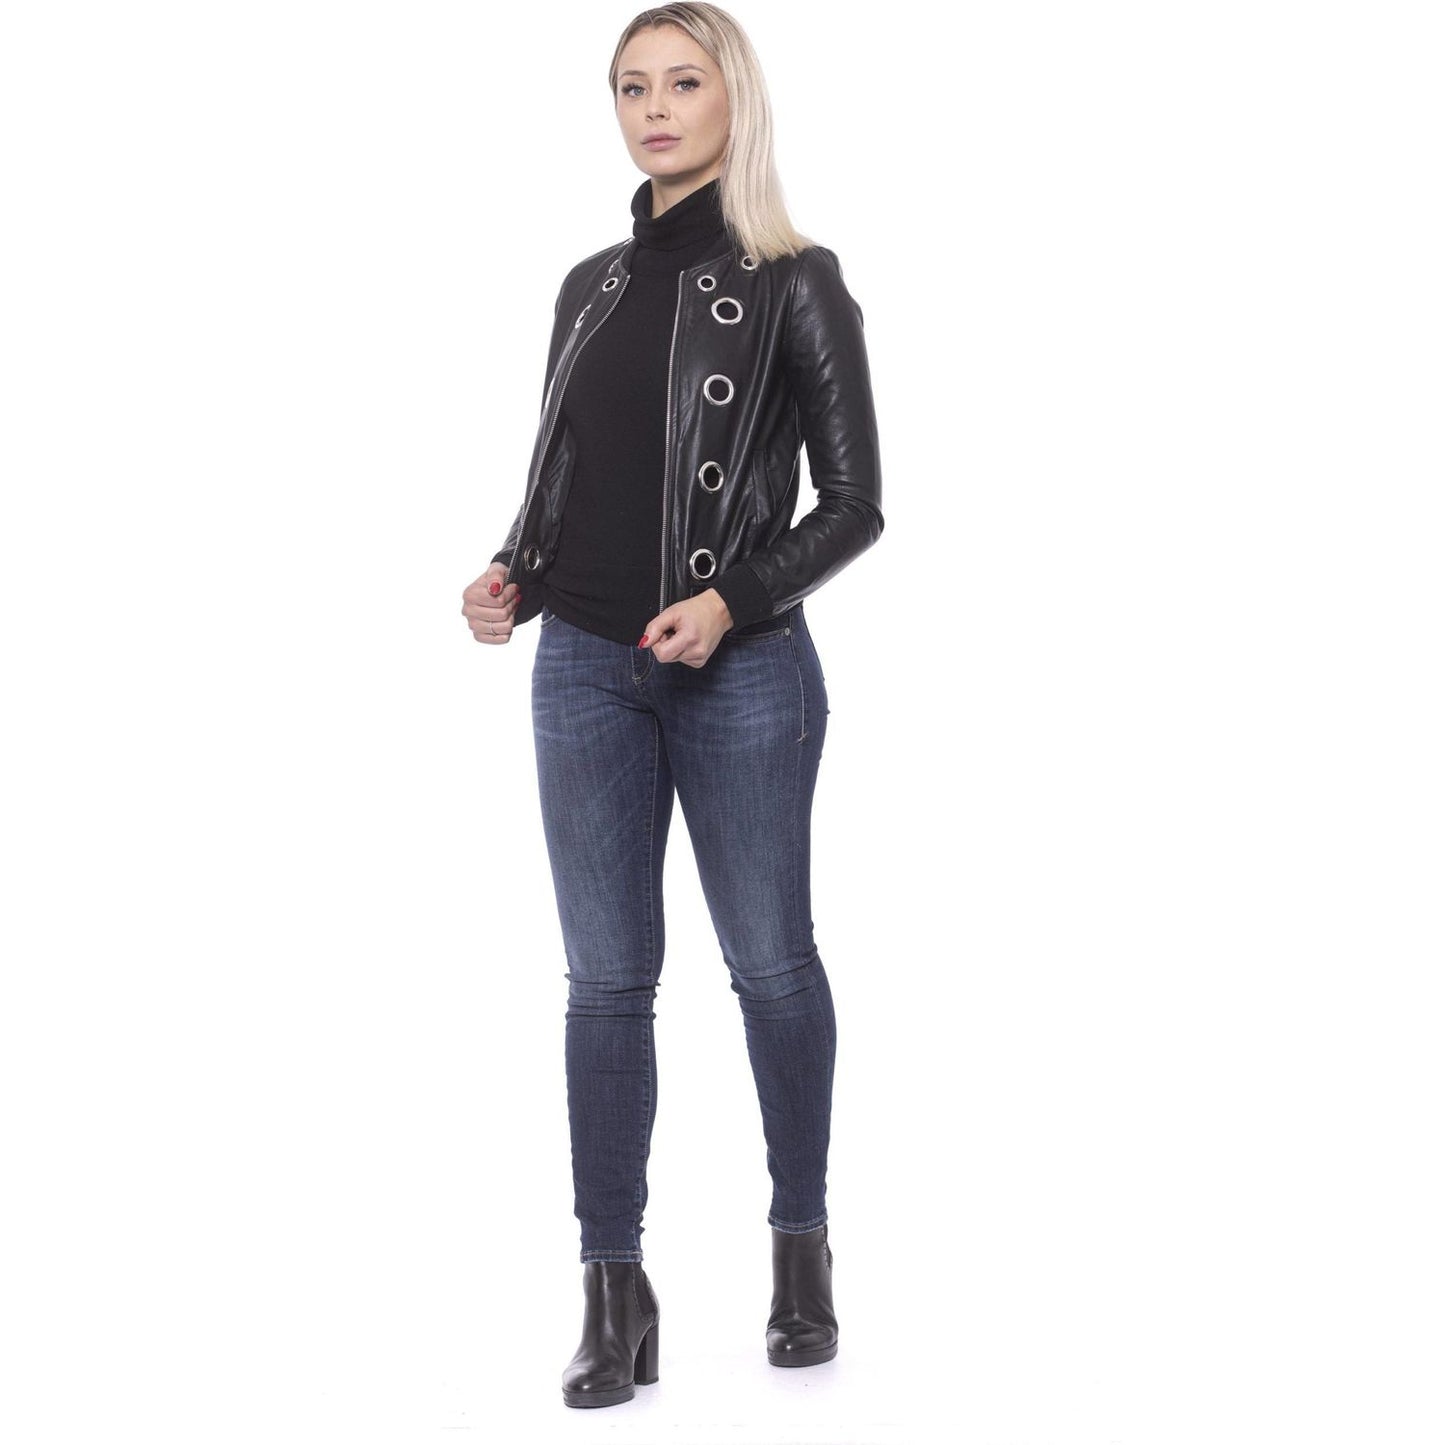 19V69 Italia Chic Eco-Leather Studded Slim Jacket black-viscose-jacket